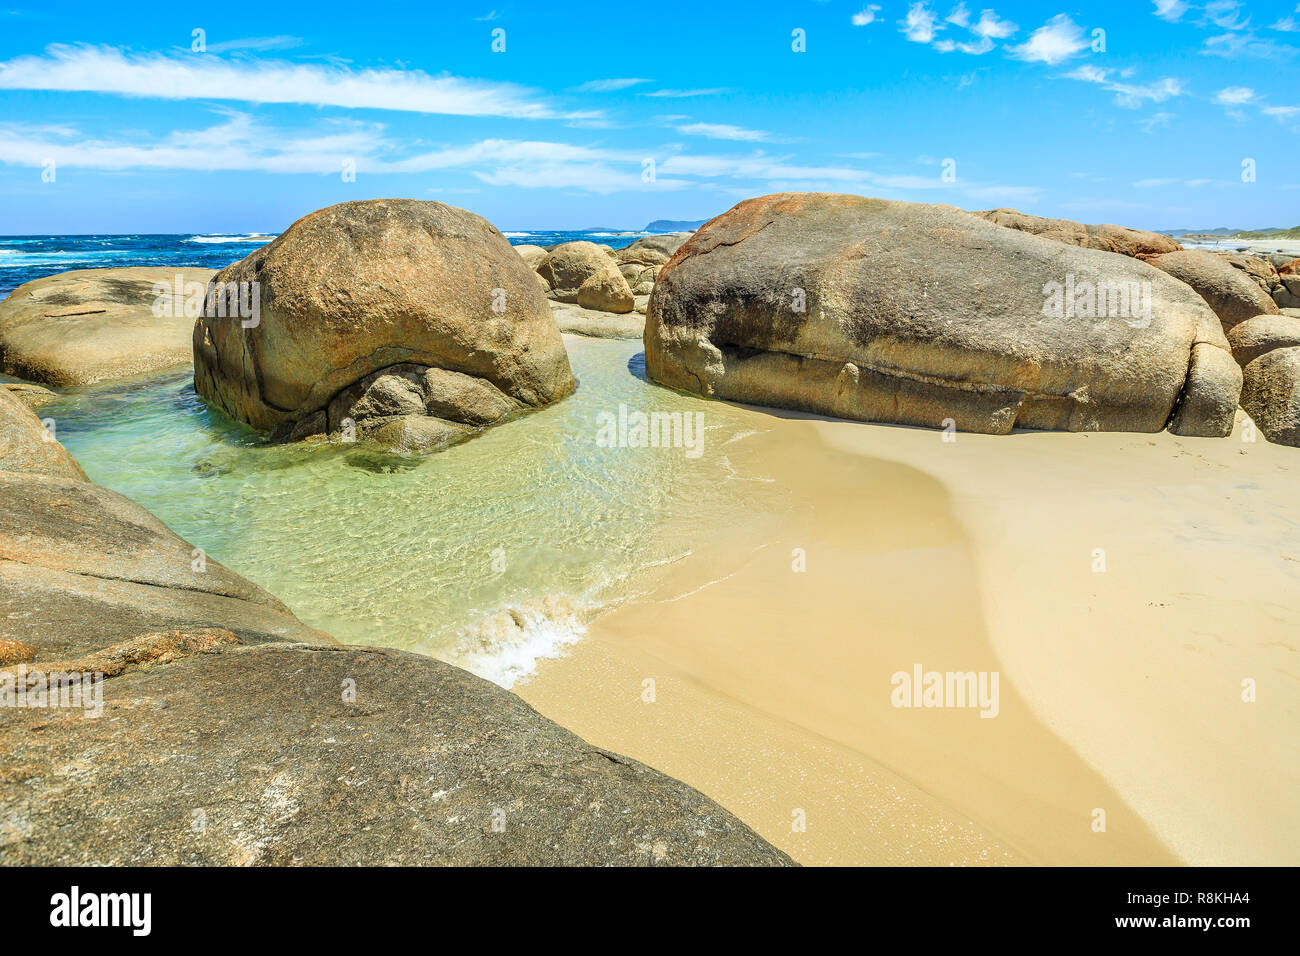 William Bay NP, Dänemark, Western Australia. Von den Wellen der Großen Südlichen Ozean durch die Abgerundeten Felsen Findlinge, die typisch für dieses Gebiet geschützten, grünen Pool ist das Paradies. Australische Reiseziel im Sommer. Stockfoto